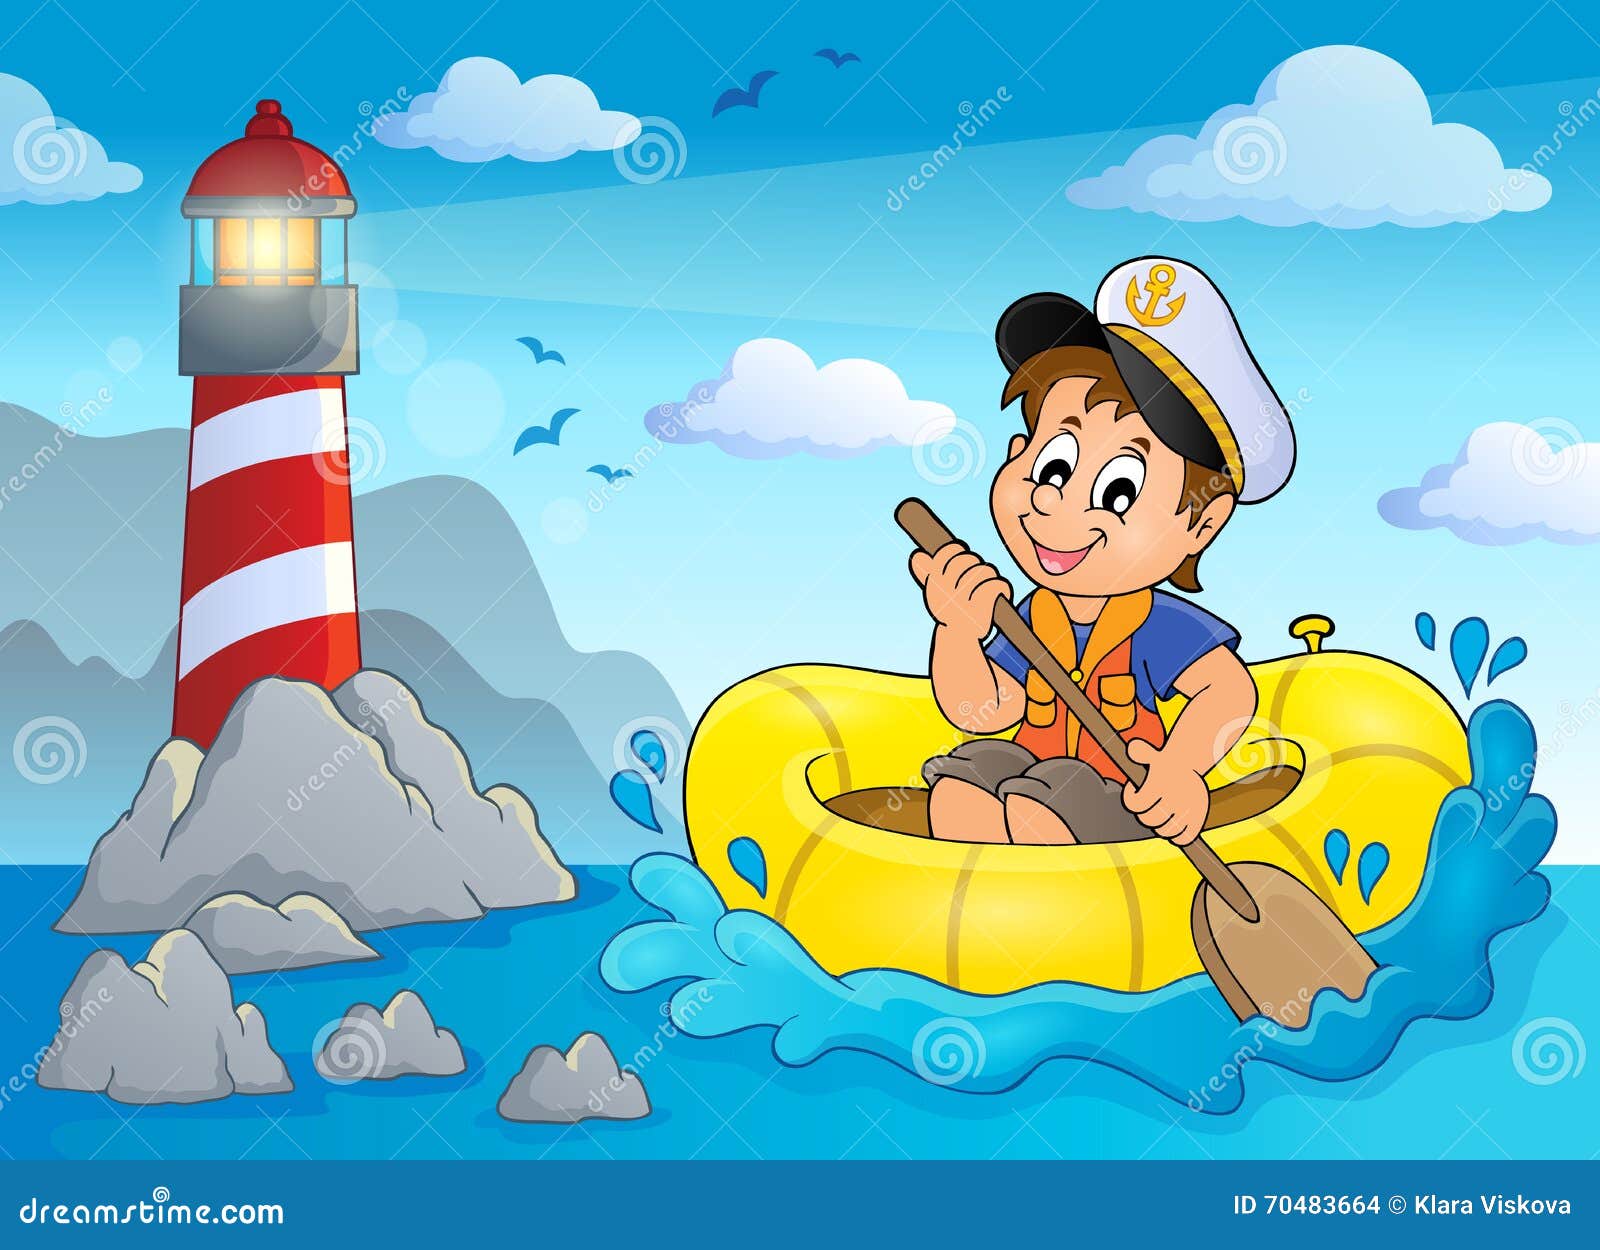 little sailor theme image 3